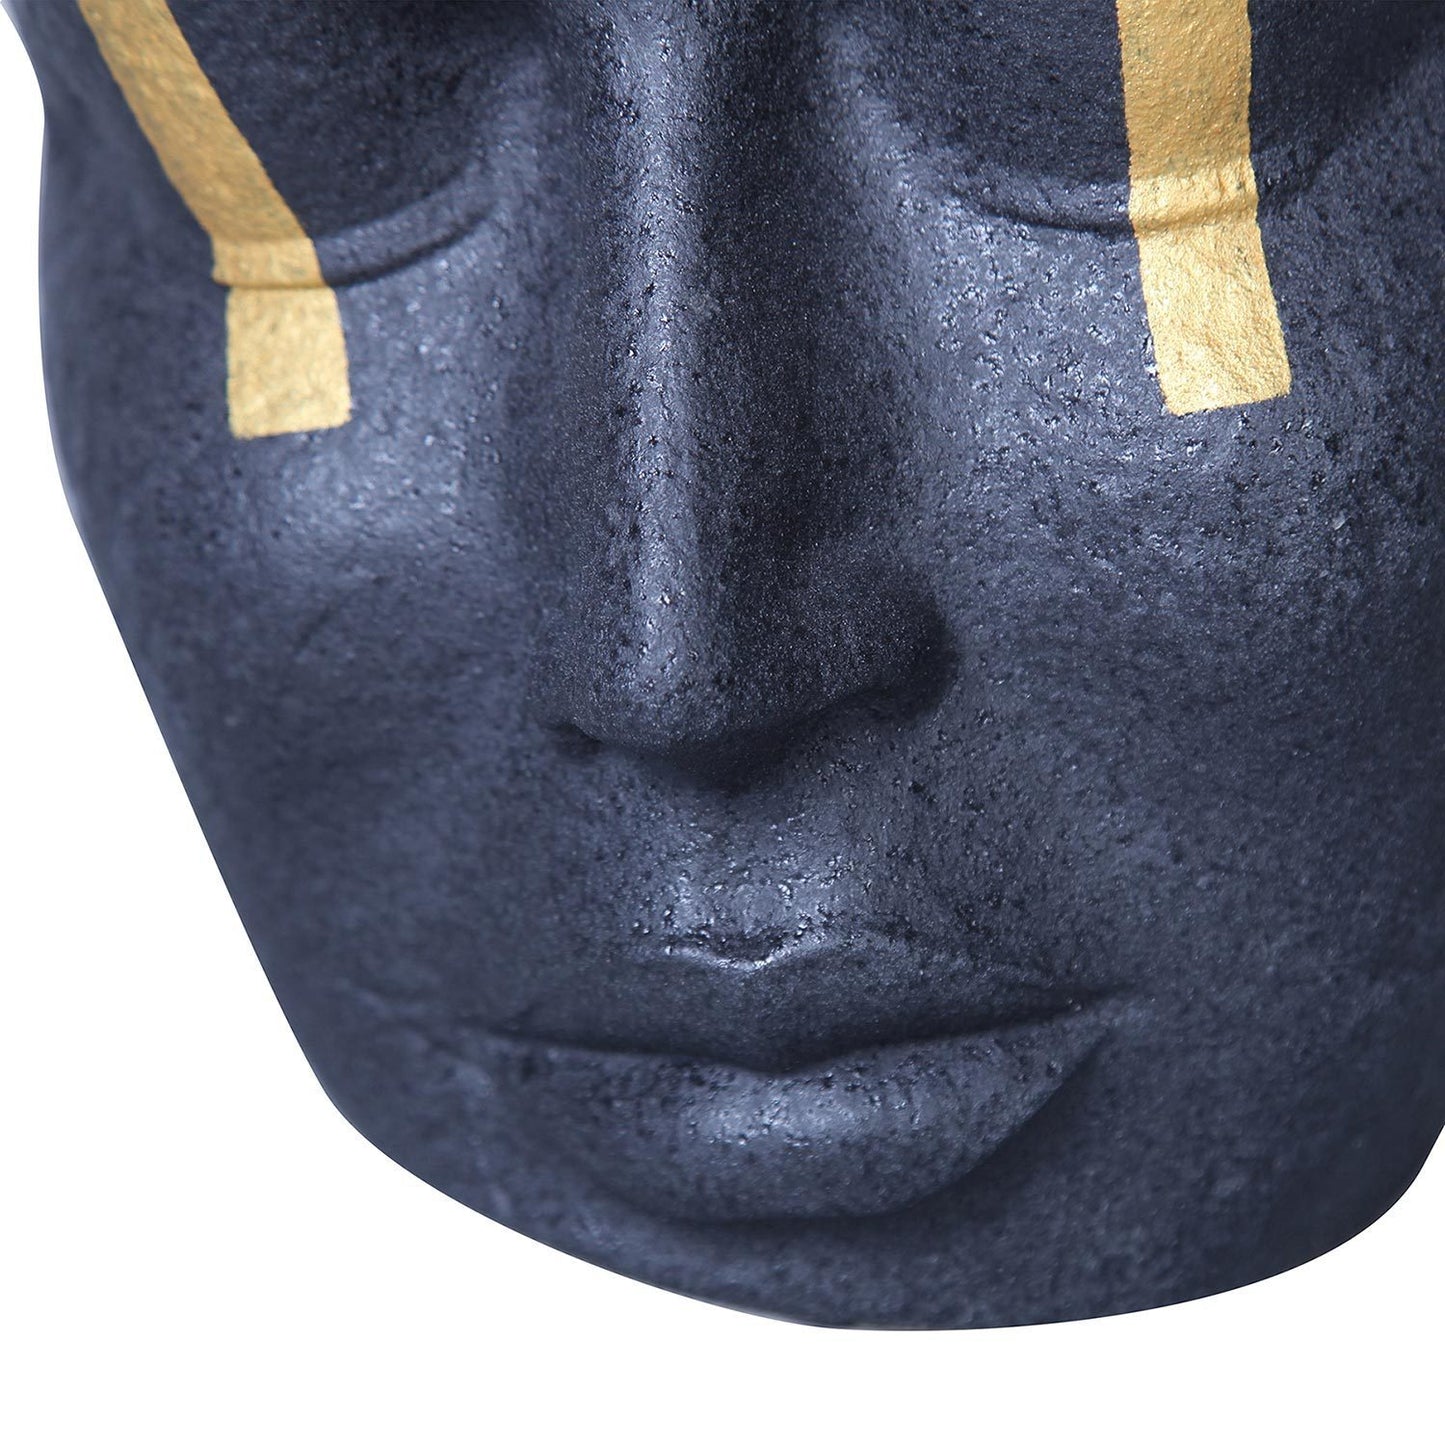 Gesichtsskulptur-Vase aus Keramik mit schwarzem und goldenem Akzent